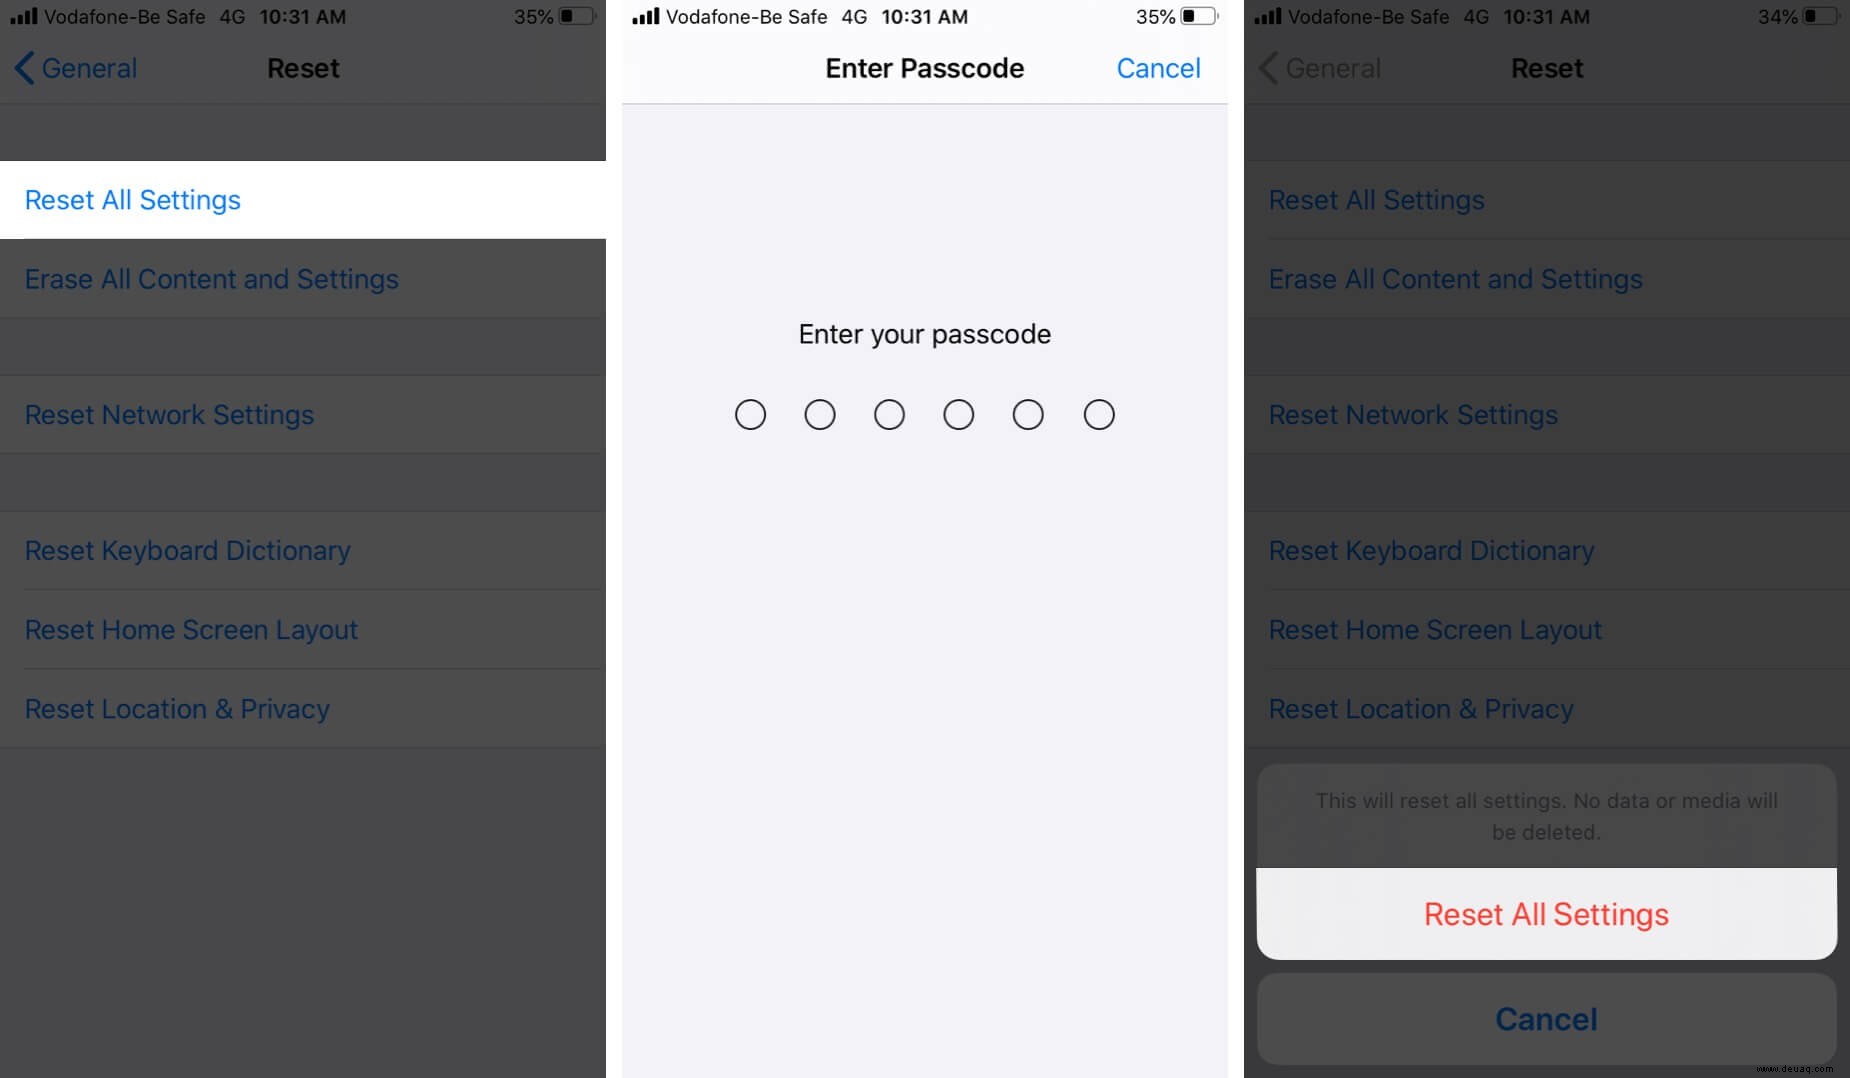 Das iPhone fragt ständig nach dem Apple-ID-Passwort (8 Lösungsansätze) 